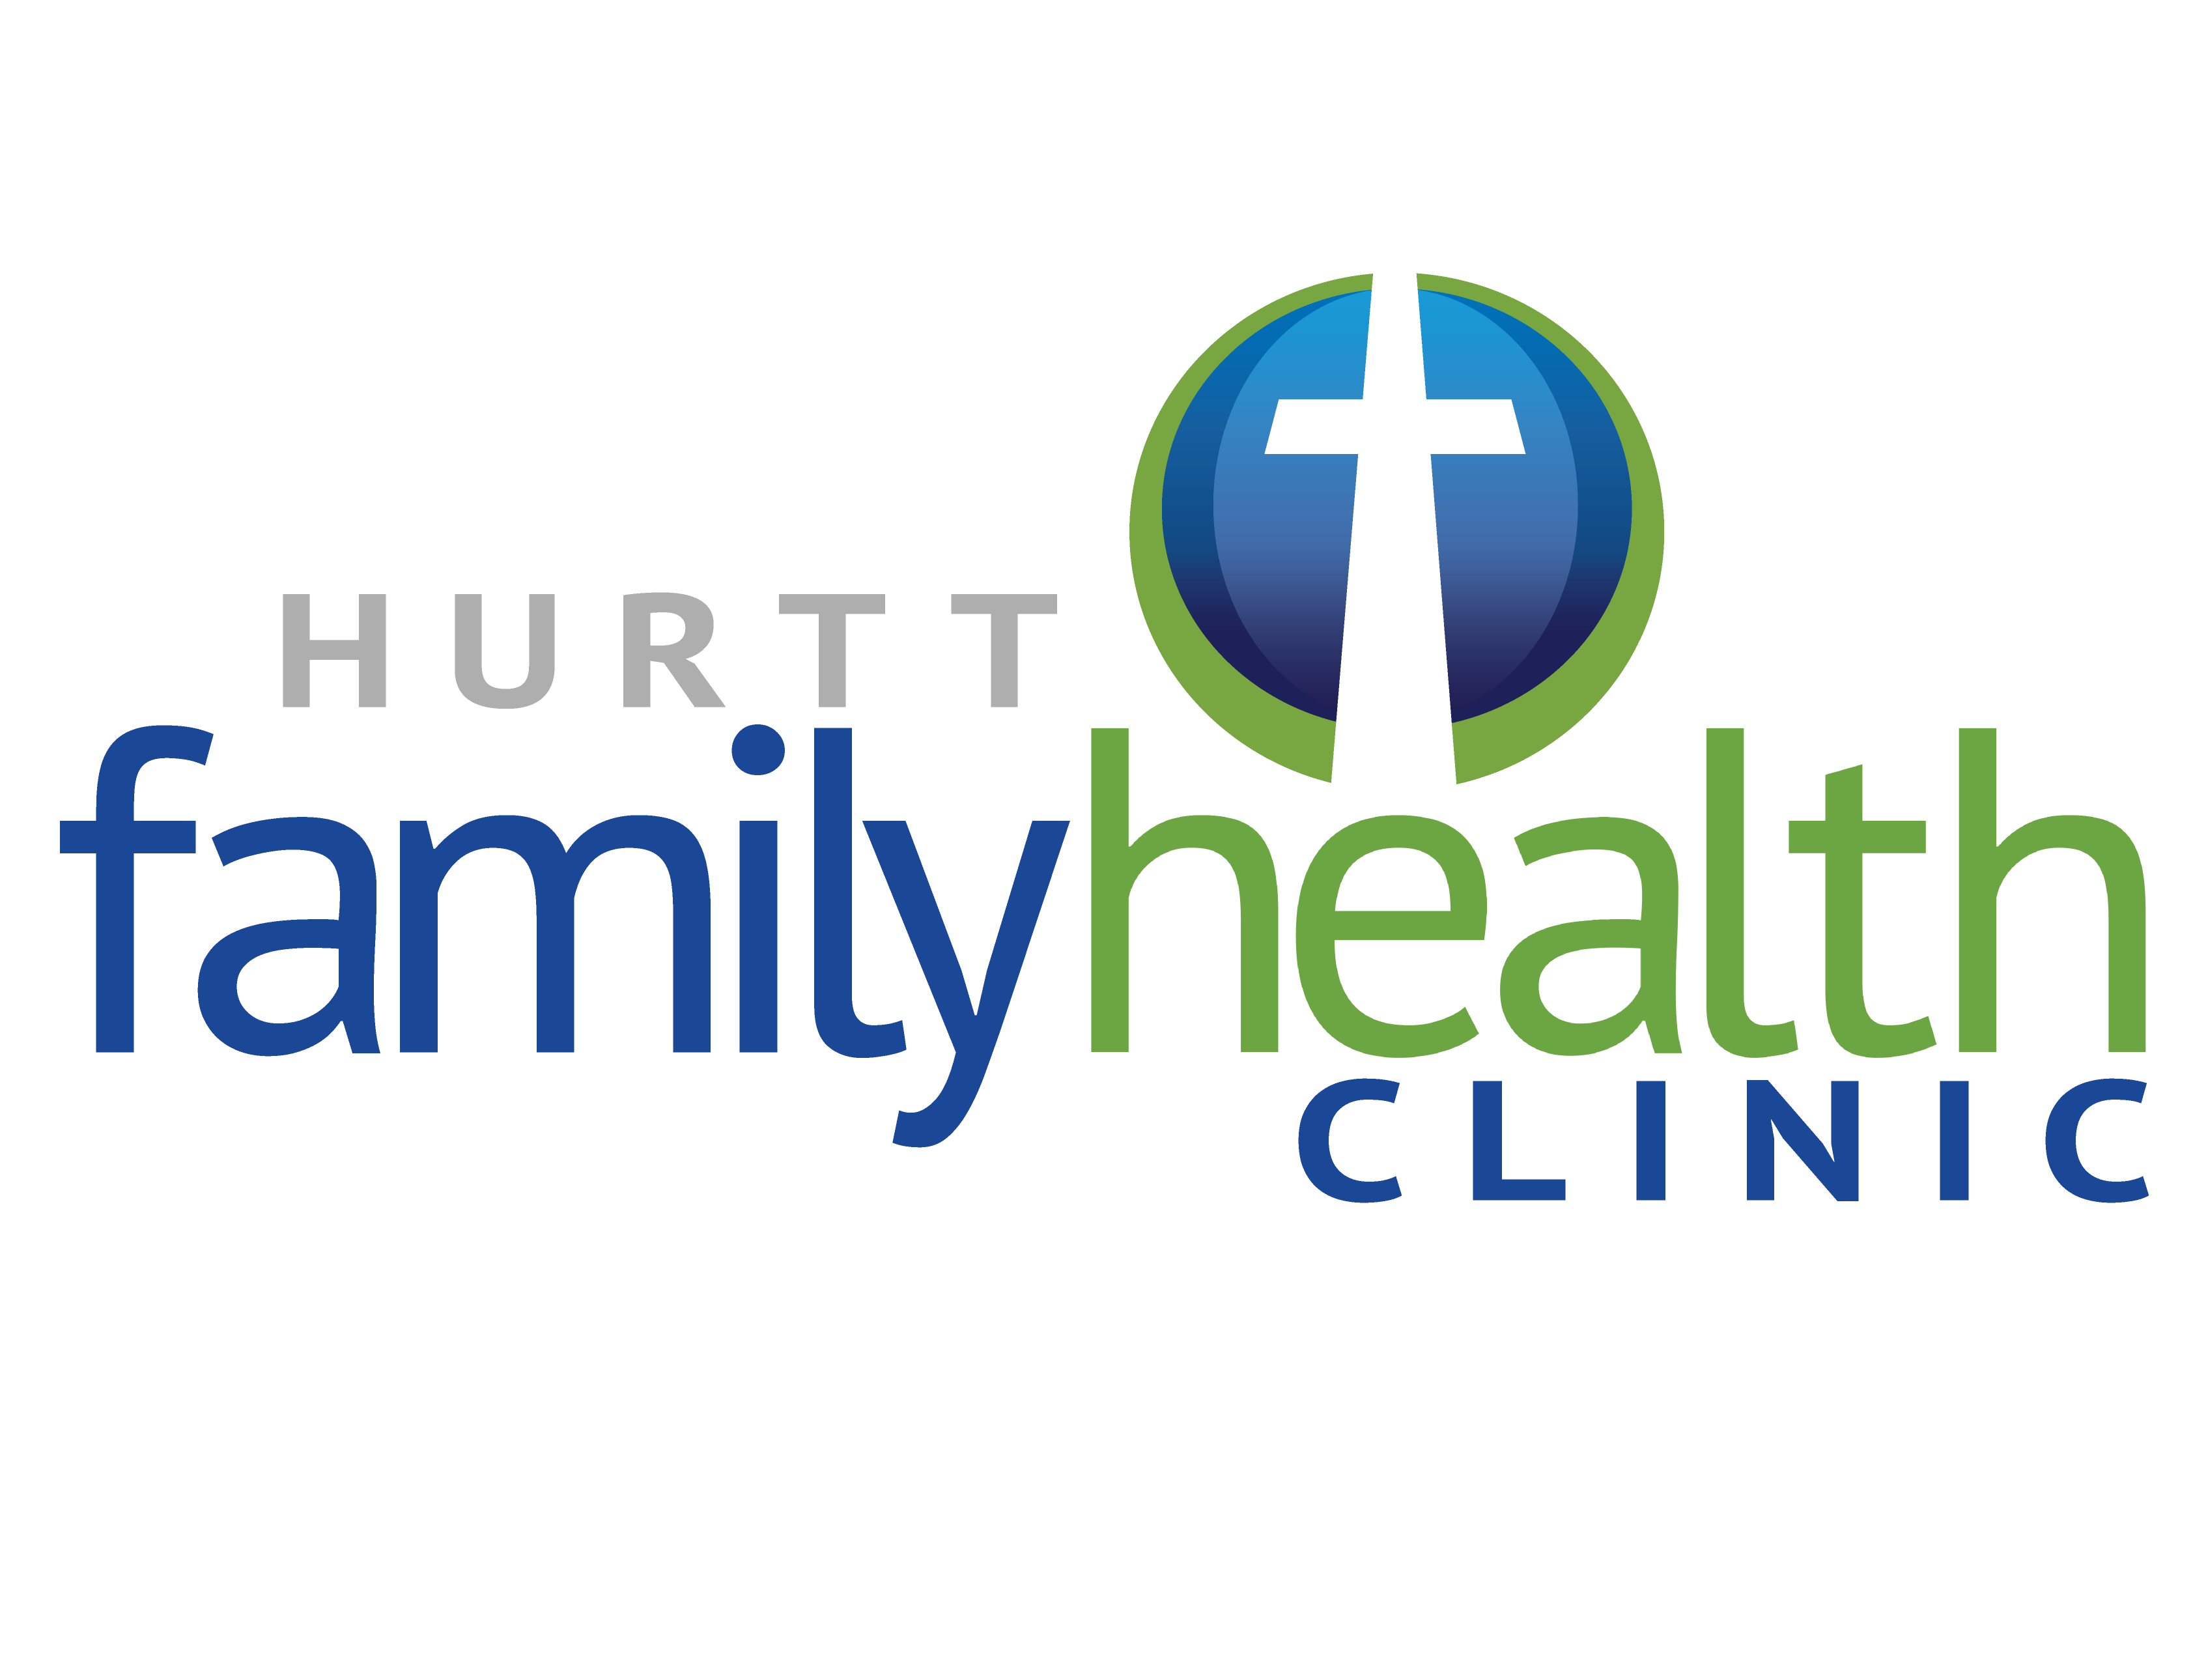 Hurtt Family Health Clinic logo